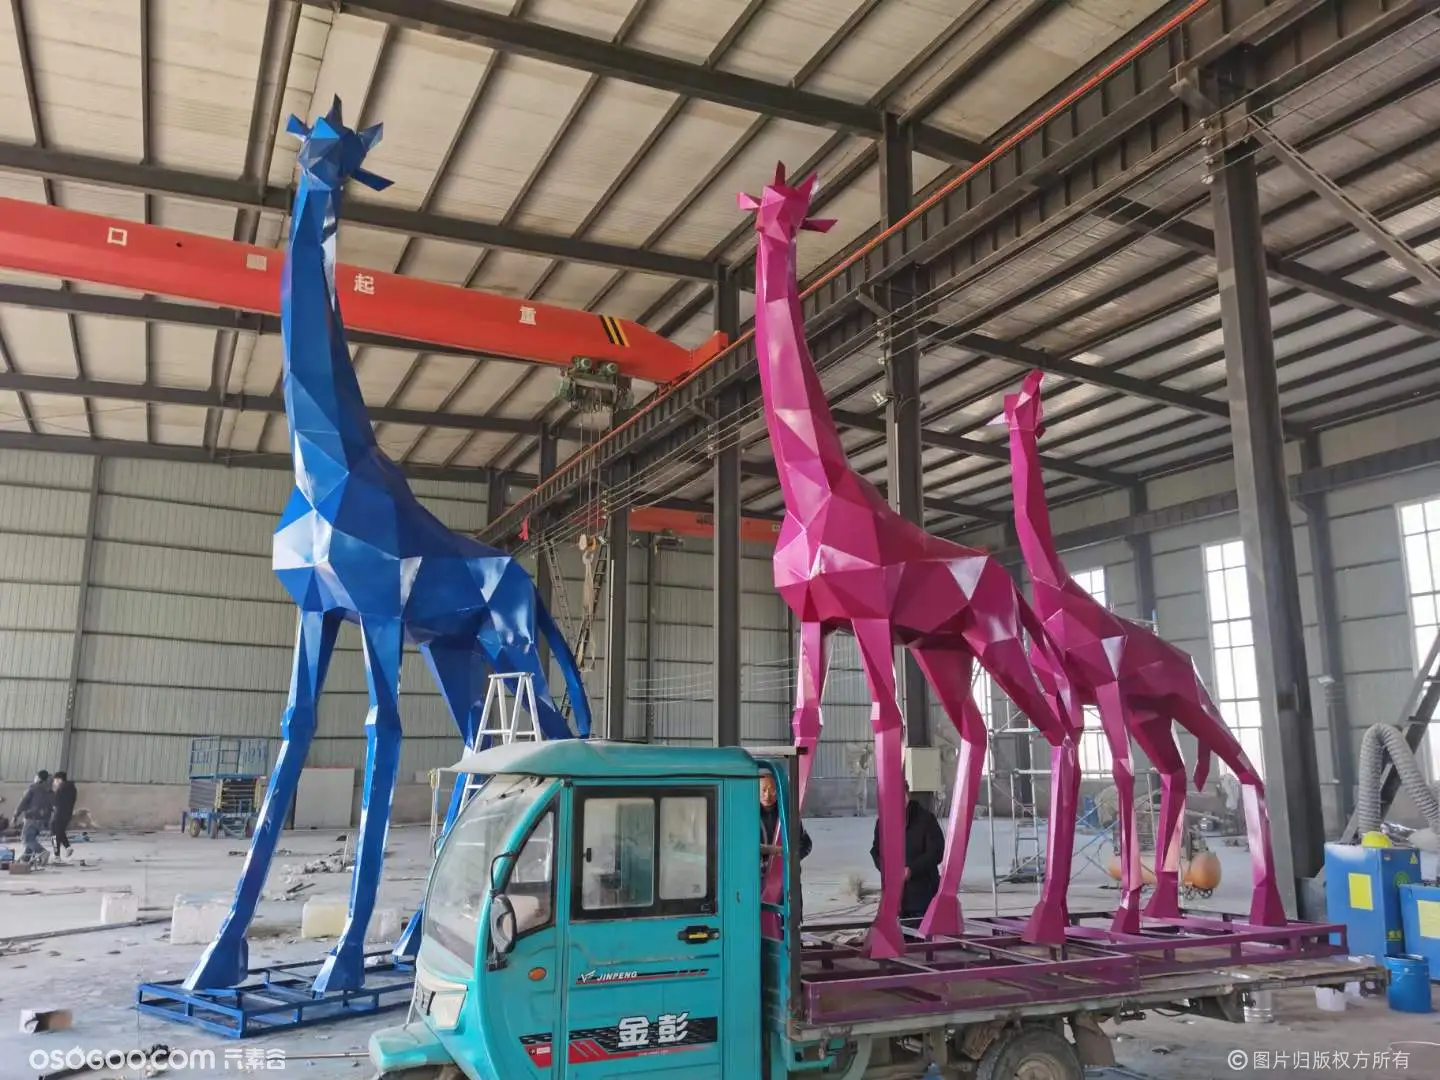 吉林室外景观 几何切面鹿雕塑 彩绘长颈鹿动物雕塑制作